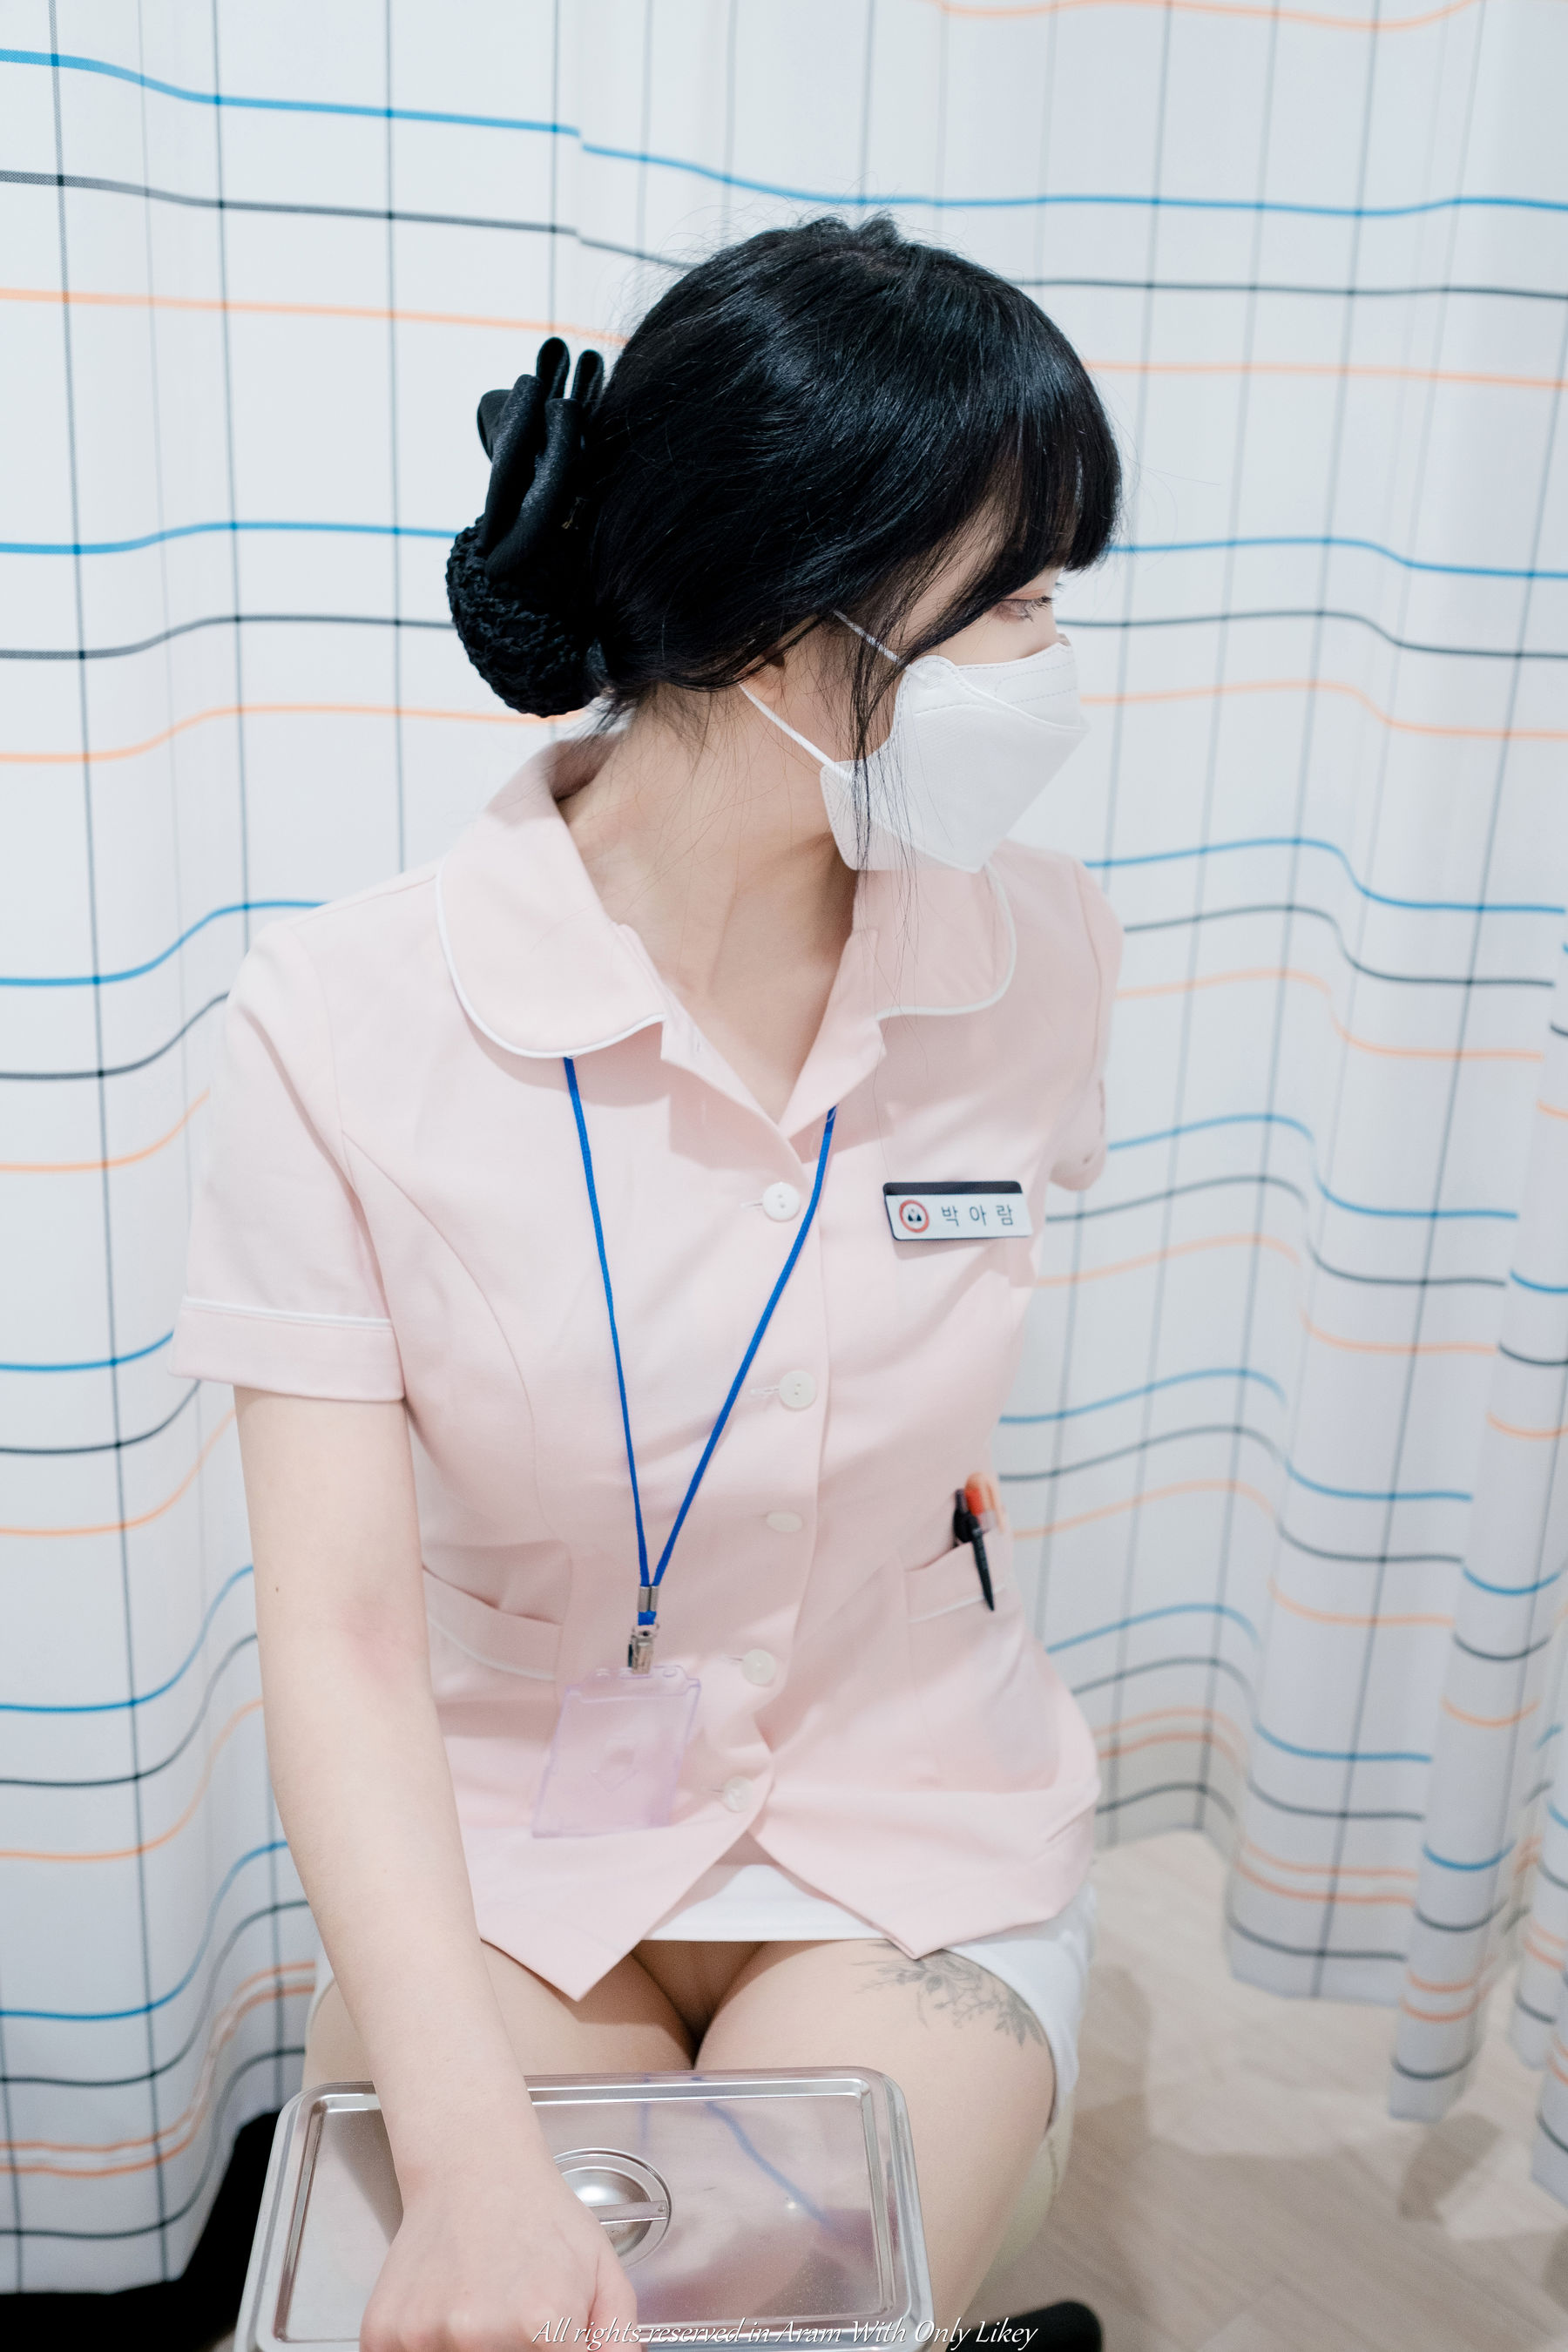 [LIKEY] Aram - A urologist Nurse